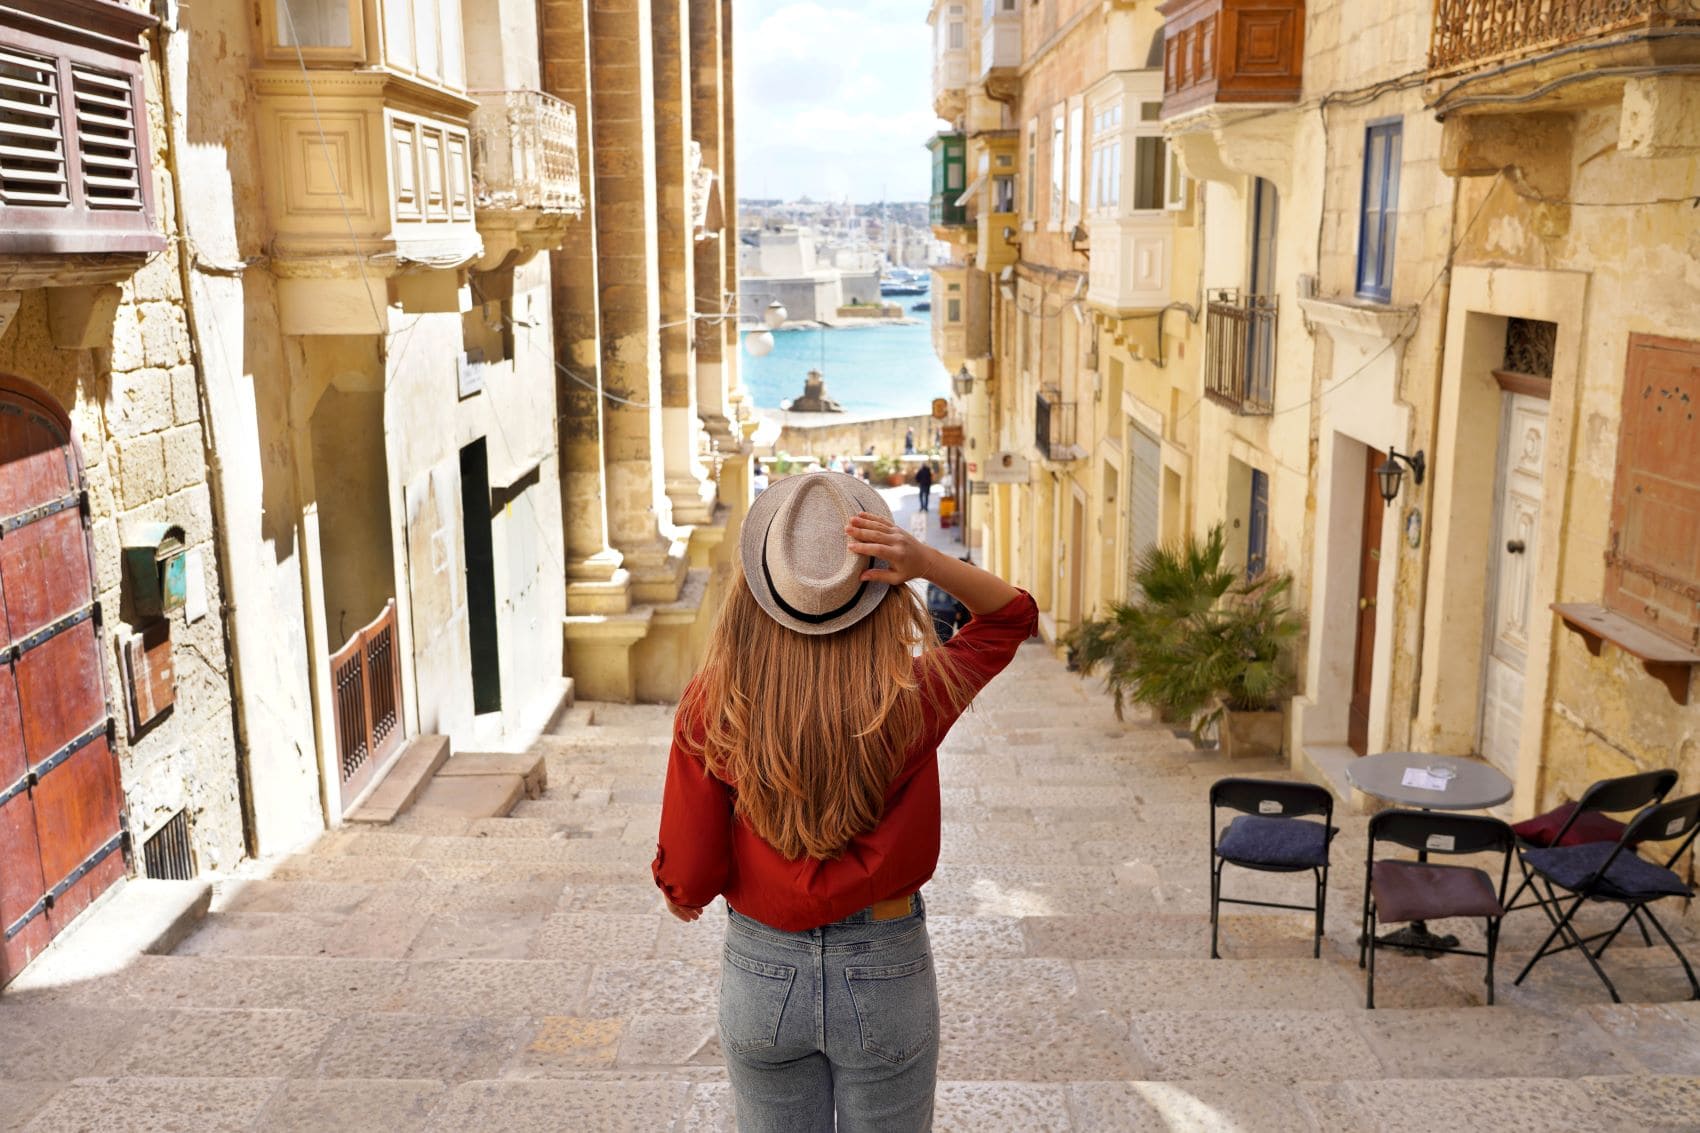 Frau mit Hut in Gasse in Valletta